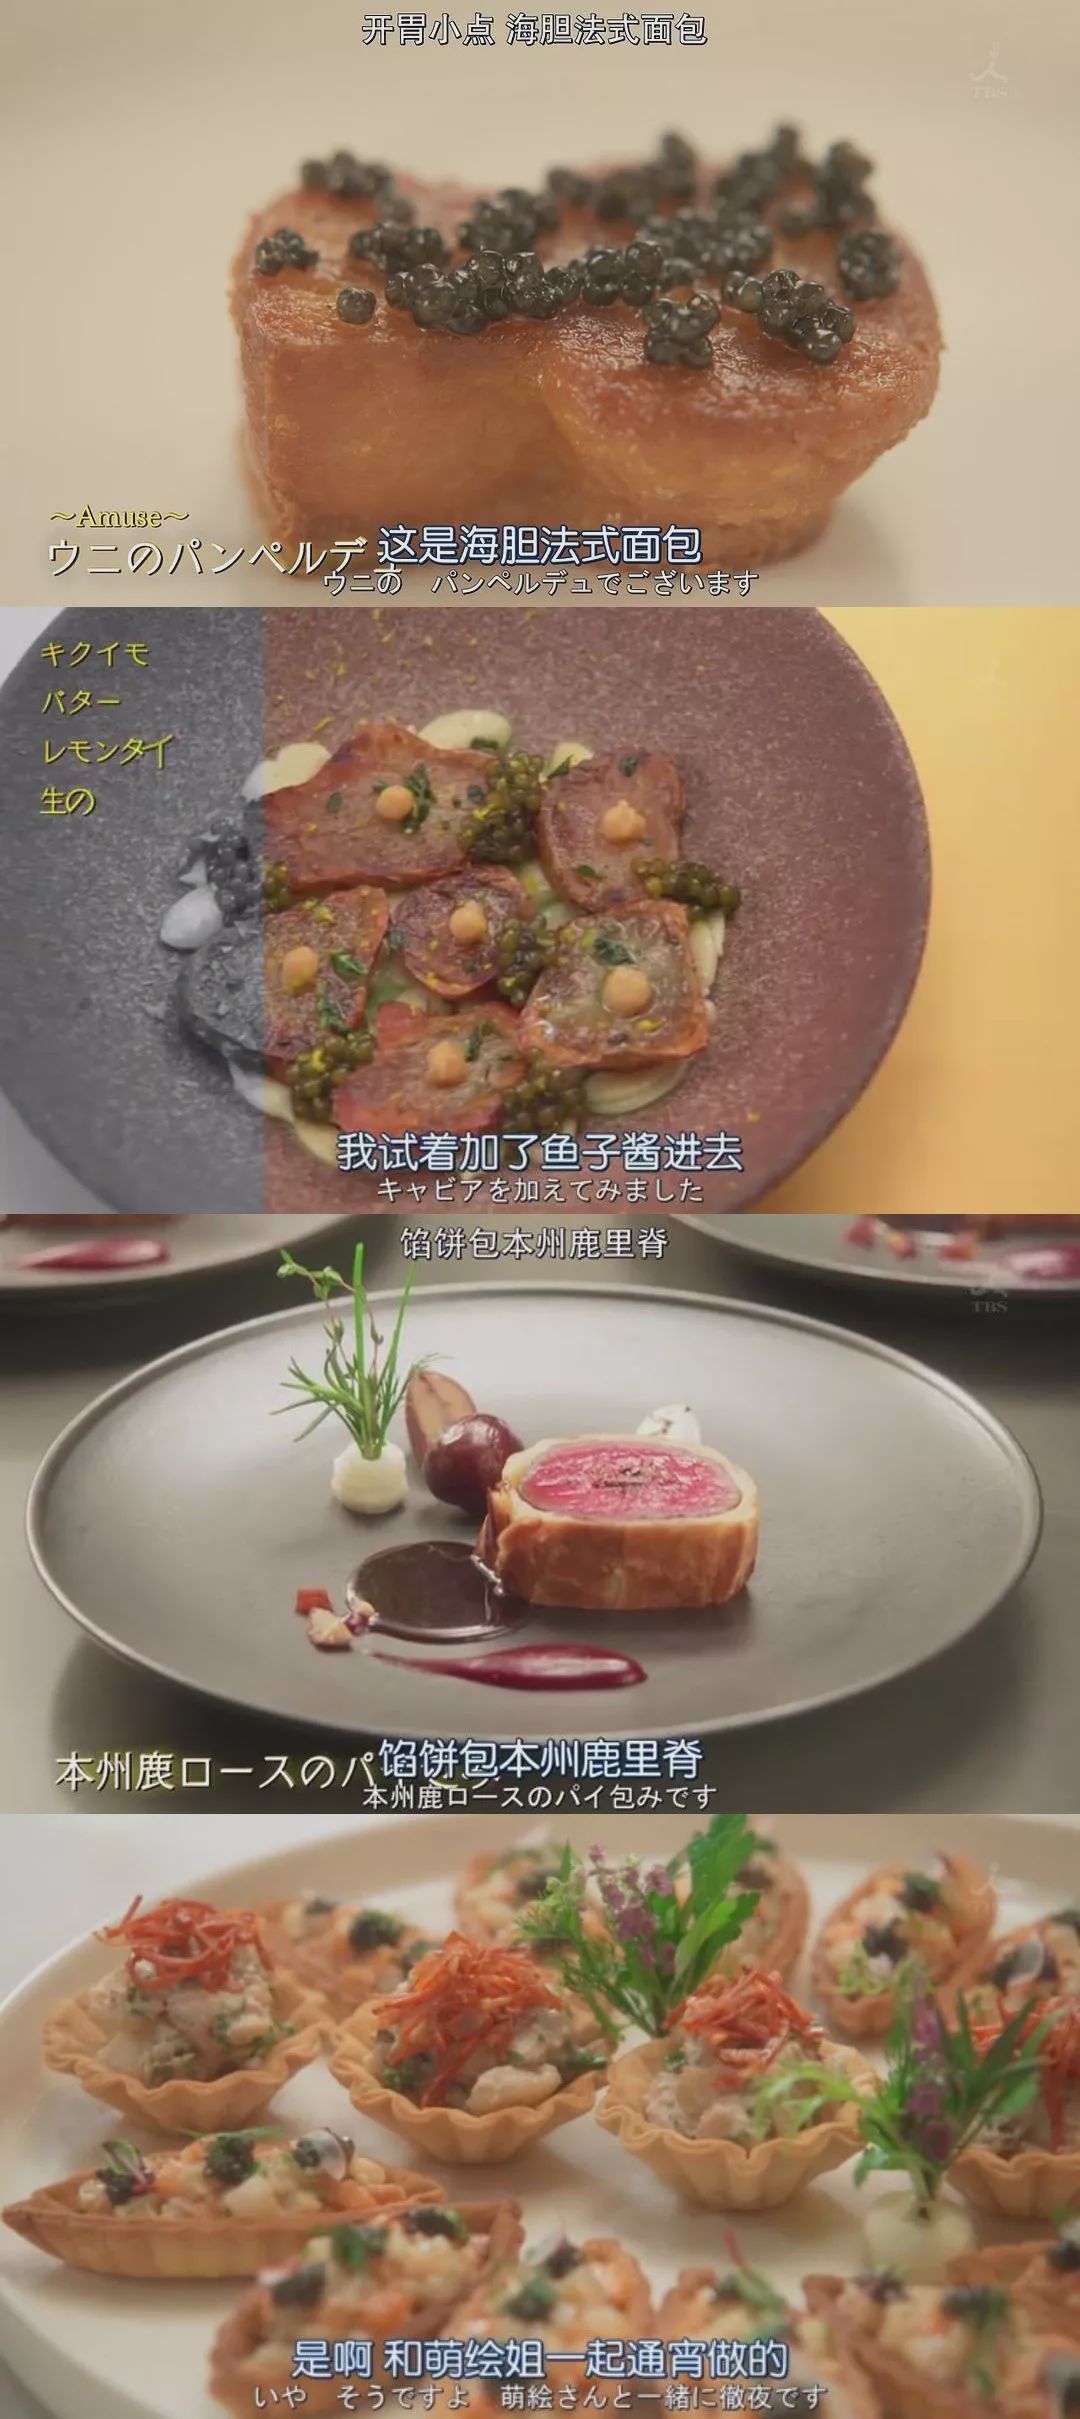 东京大饭店菜品图片